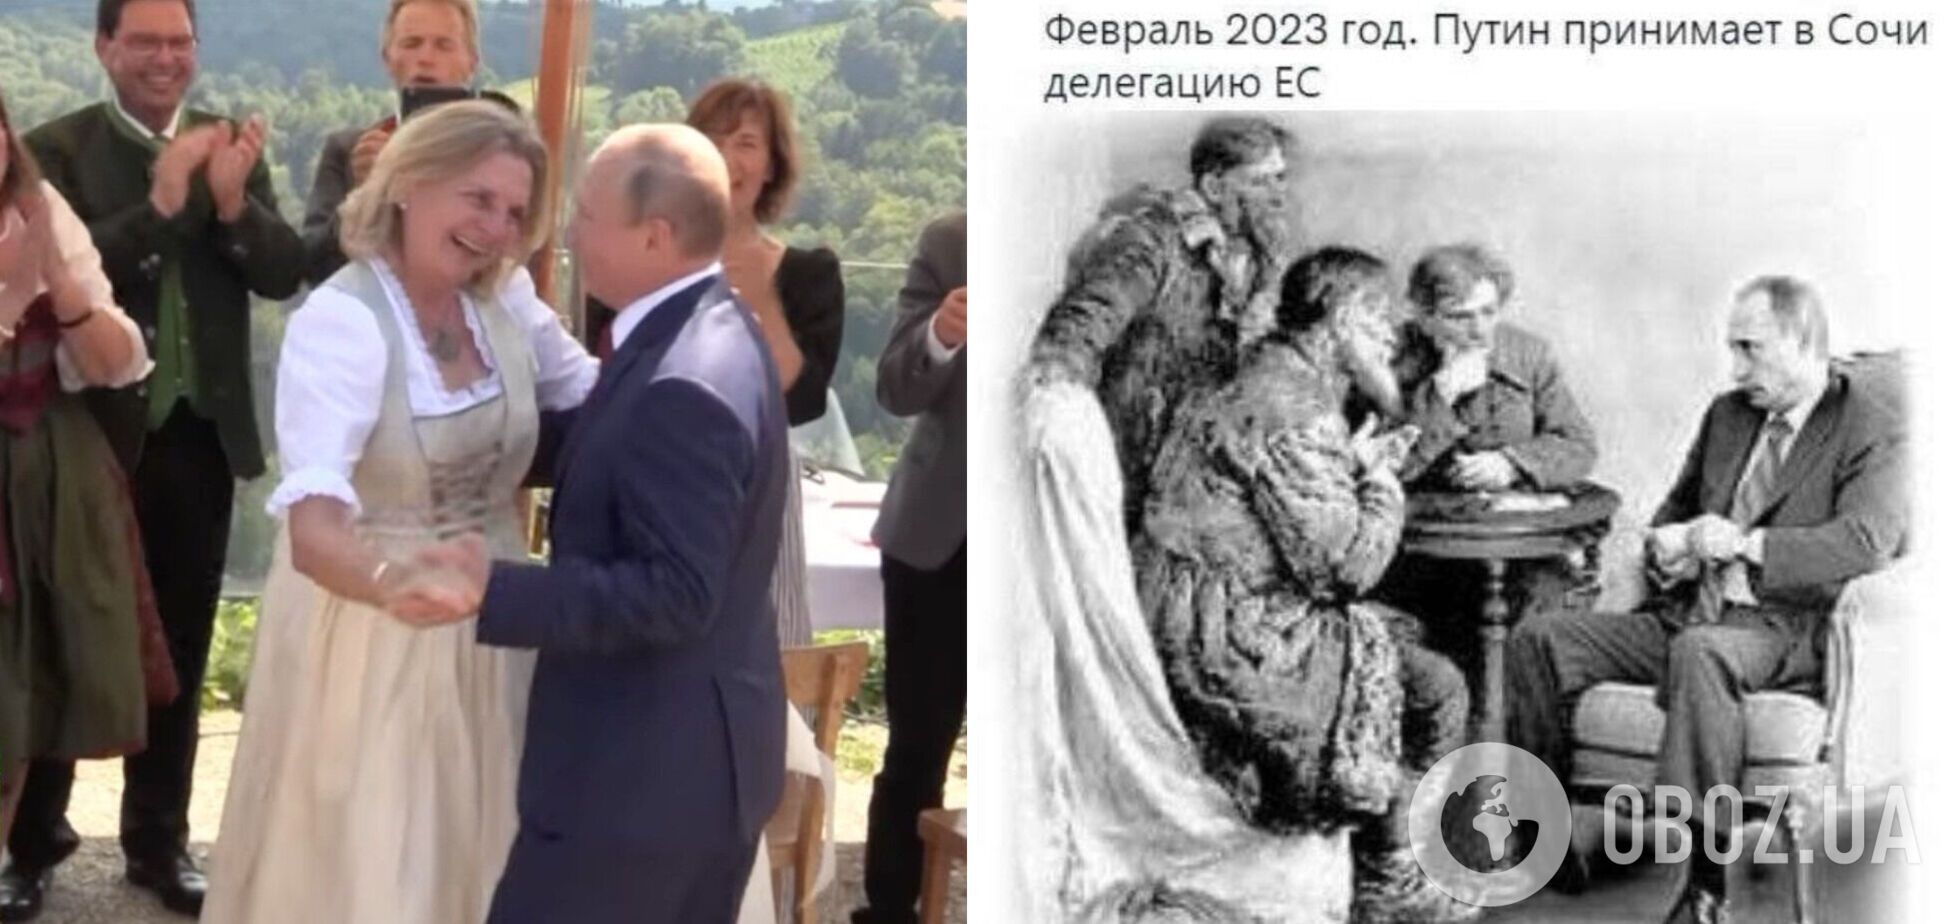 Ексглава МЗС Австрії, на весілля якої приїжджав Путін, 'прогнулася' перед РФ: пост викликав хвилю гніву